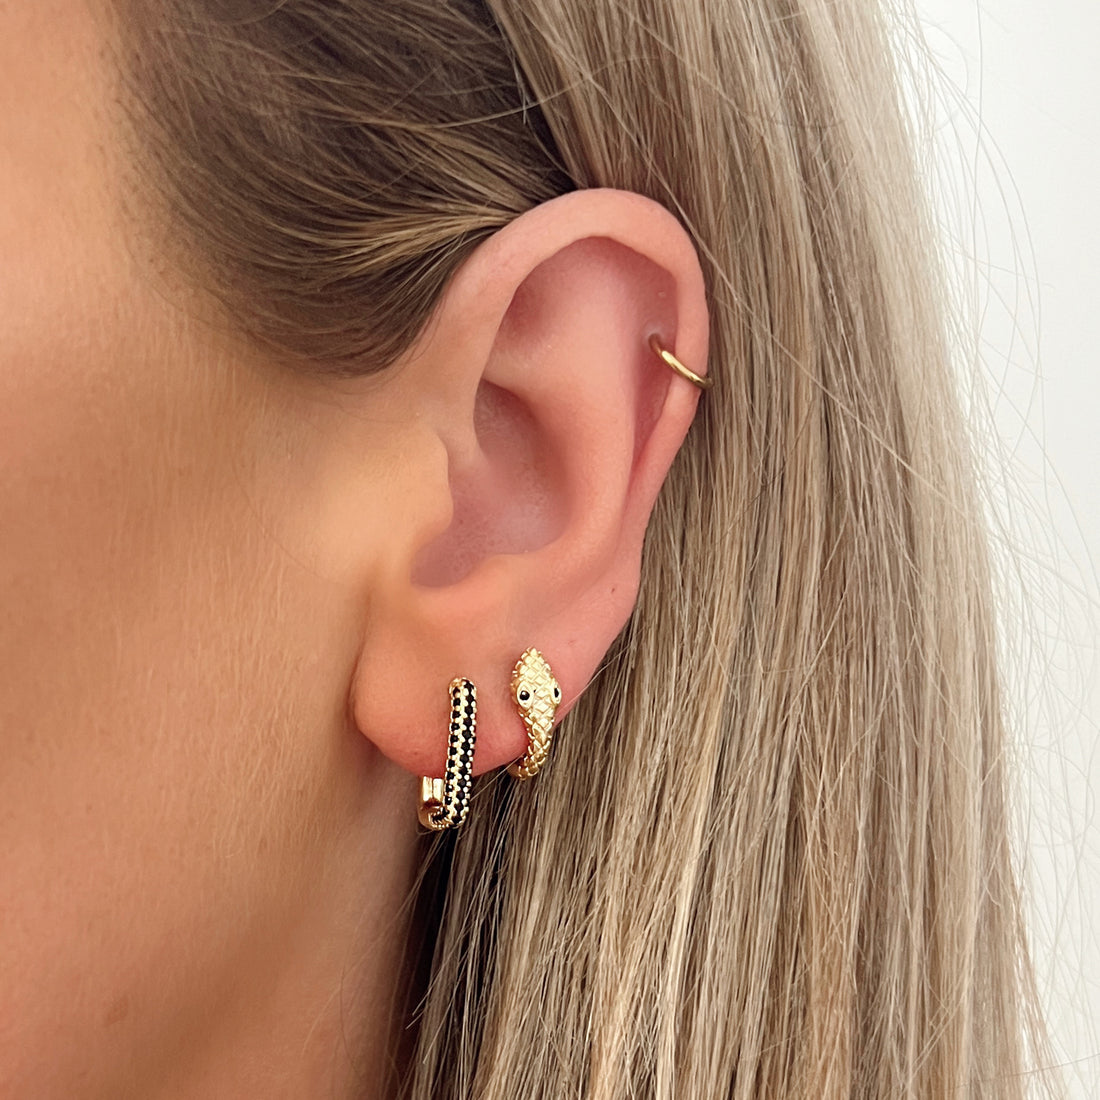 Kleine oorbellen goud in de vorm van slang met zwart oogje. De oorbellen zijn van gold plated koper materiaal en zijn waterproof. Snake earrings hoops gold. 